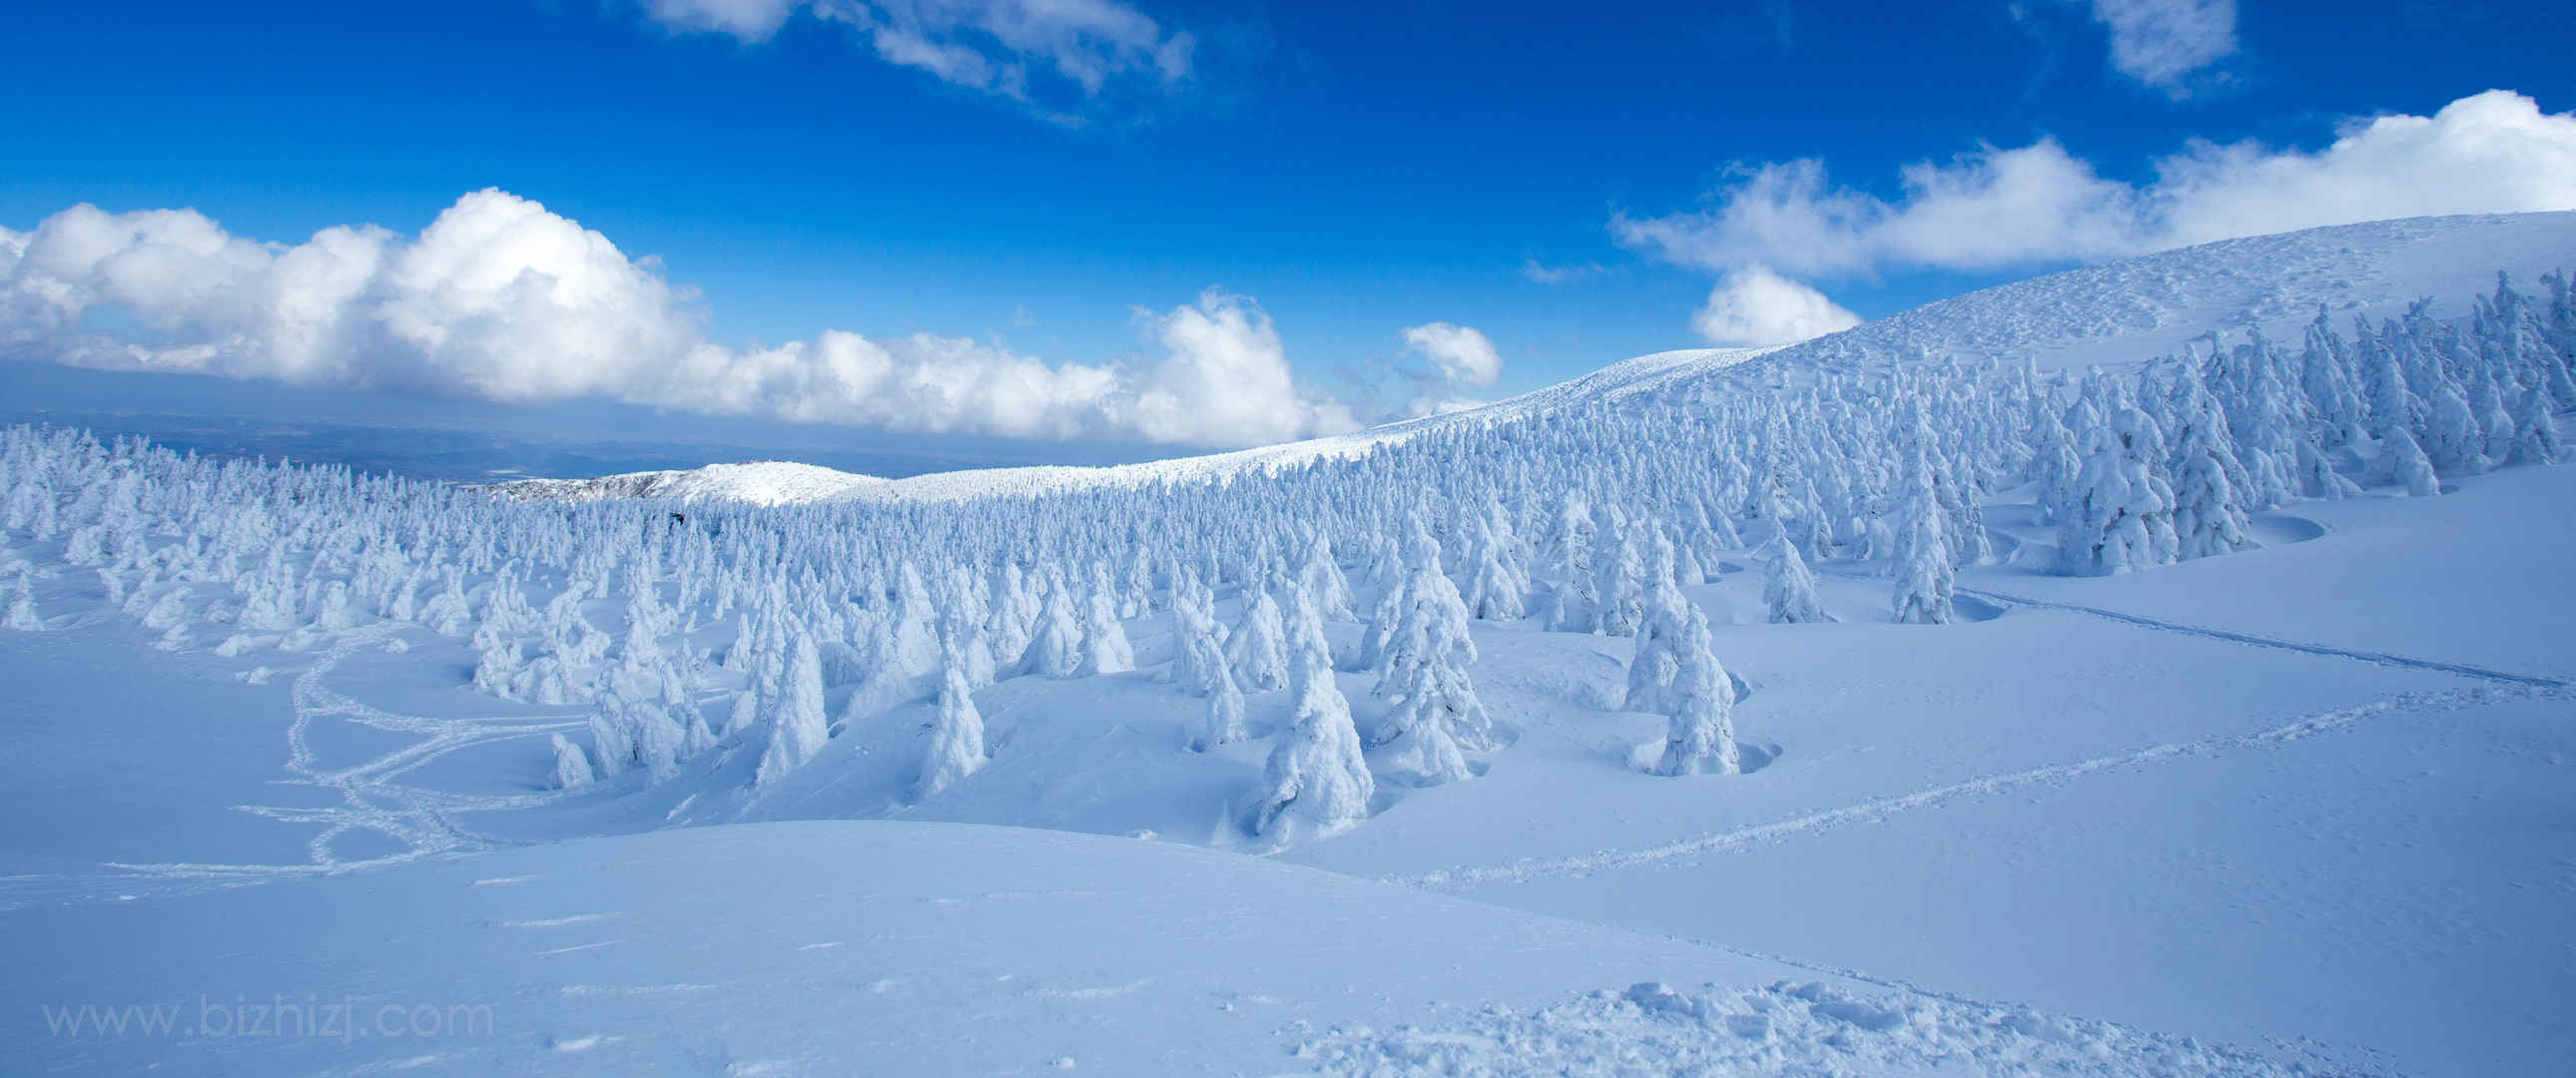 冬天 蓝天 雪景壁纸